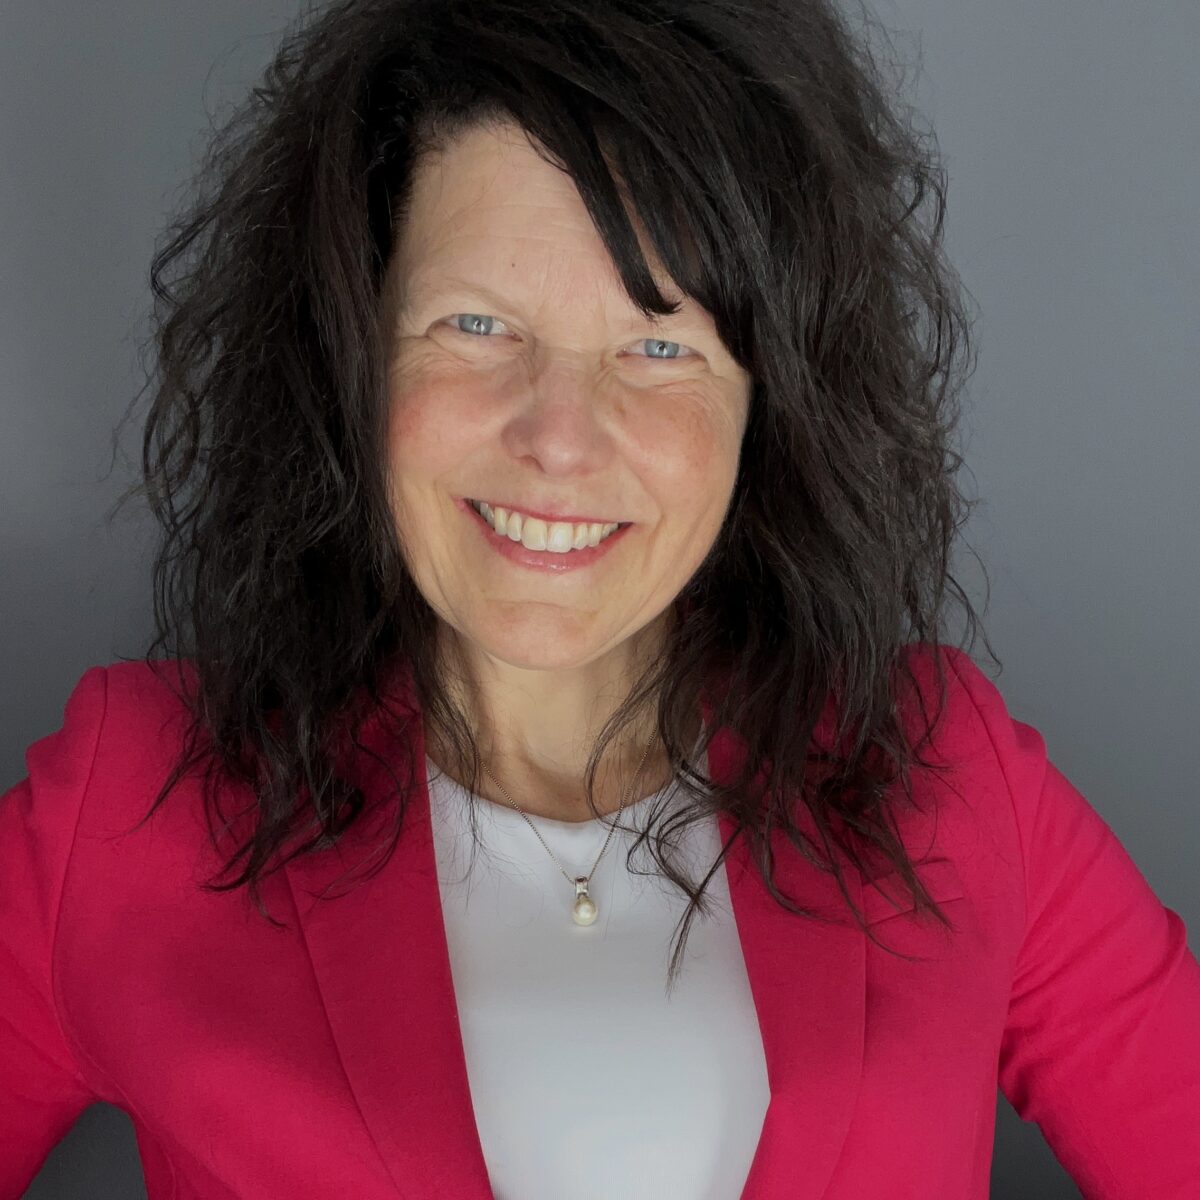 Ms. Julie Prévéreault, CRHA as Managing Director